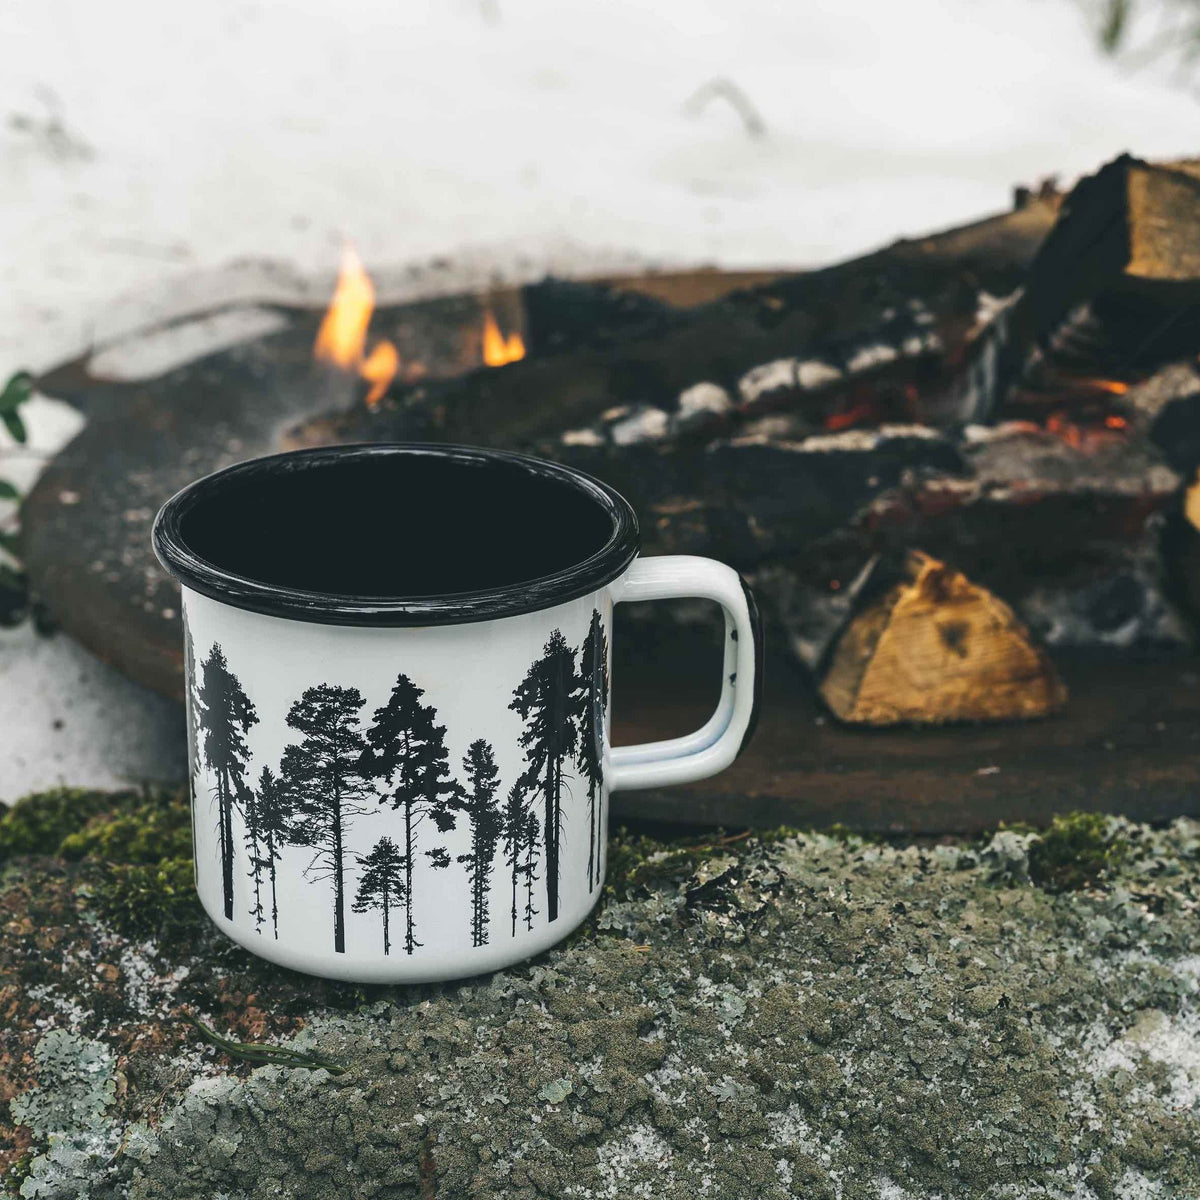 Muurla Design The Forest Enamel Mug, by a fire